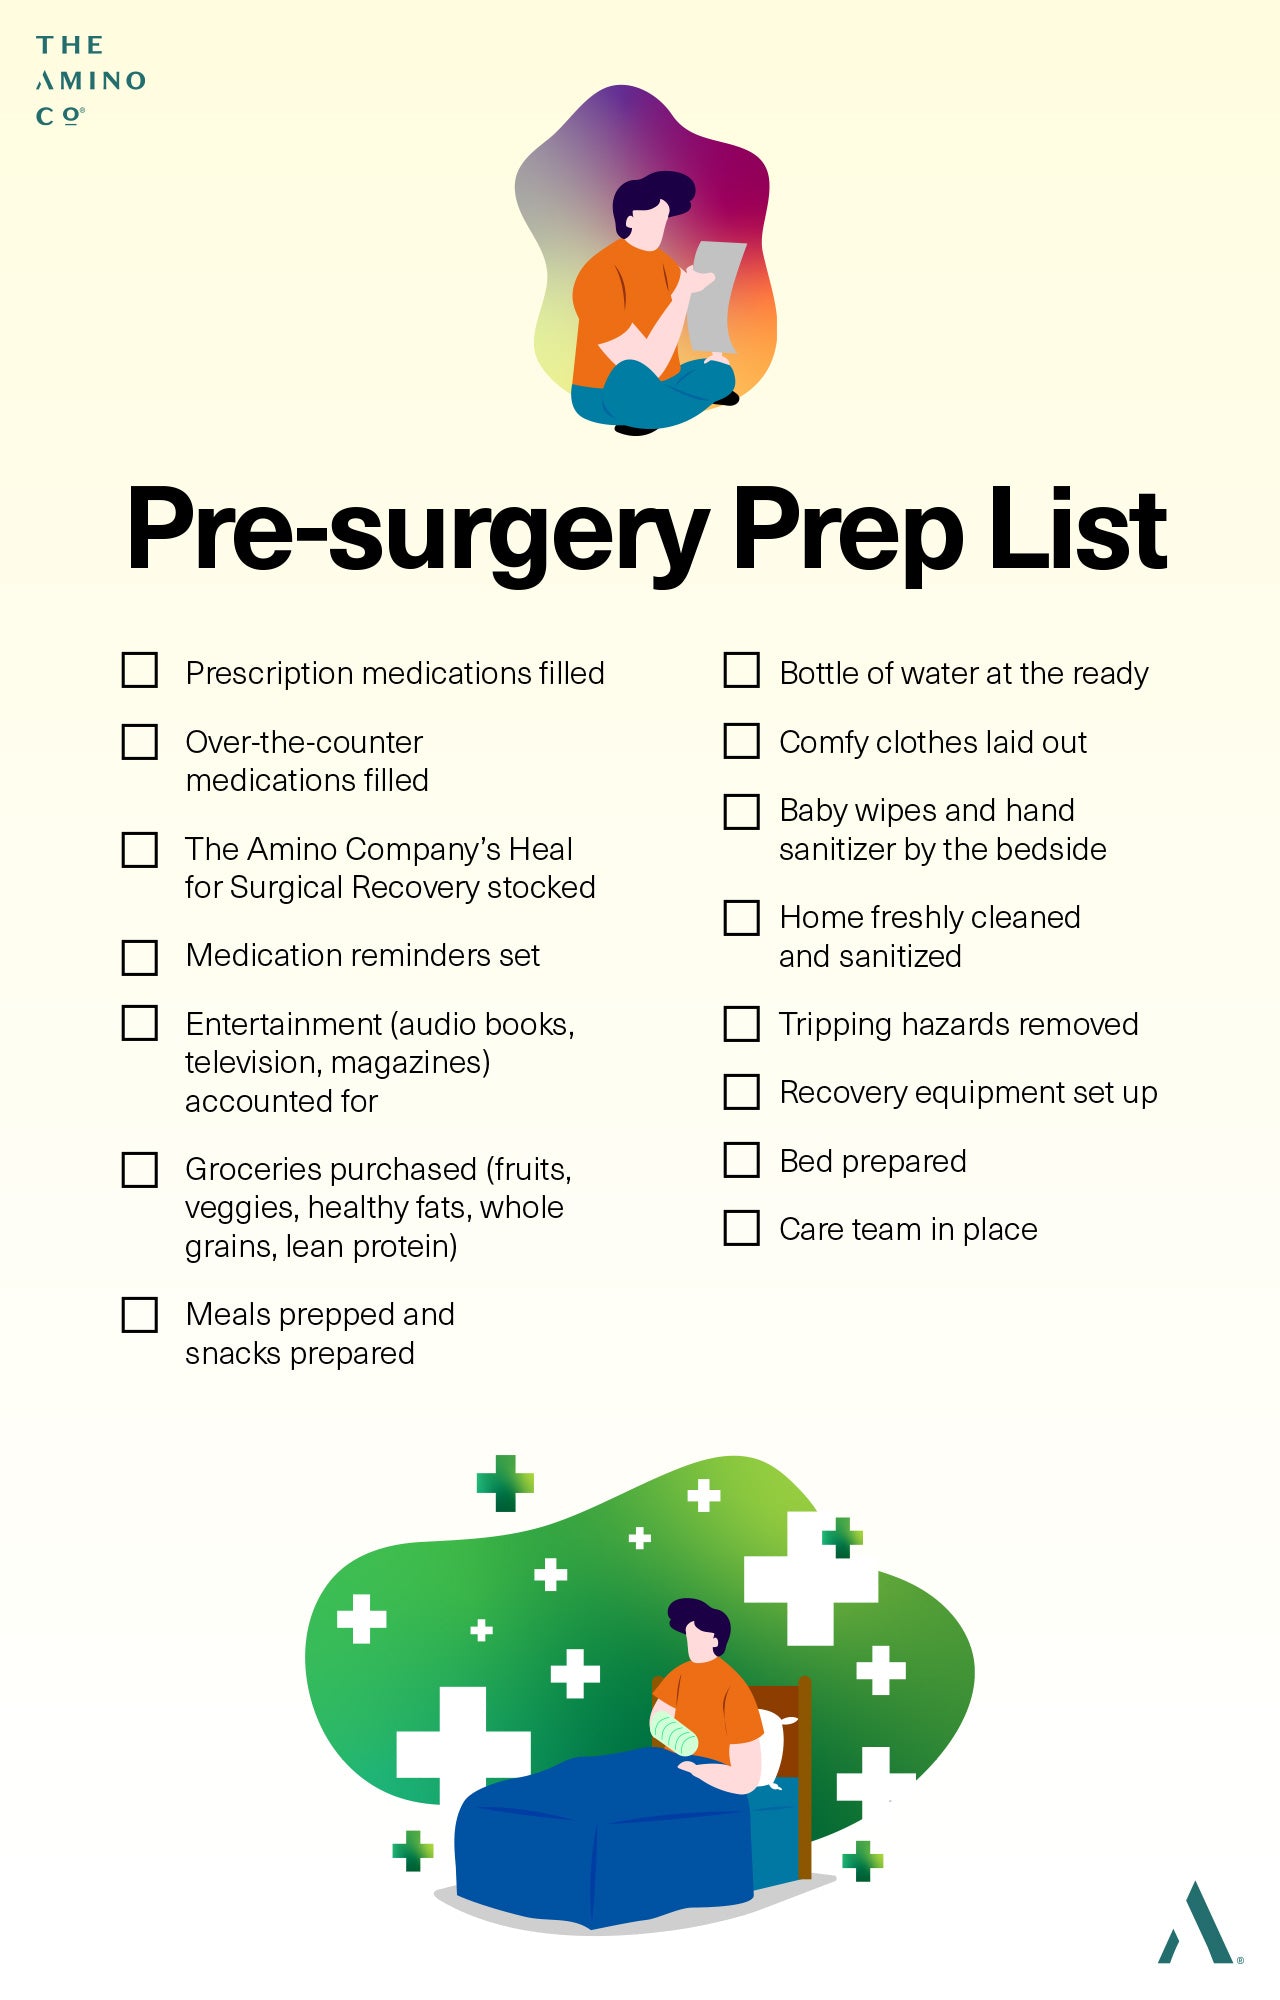 Pre-surgery prep list